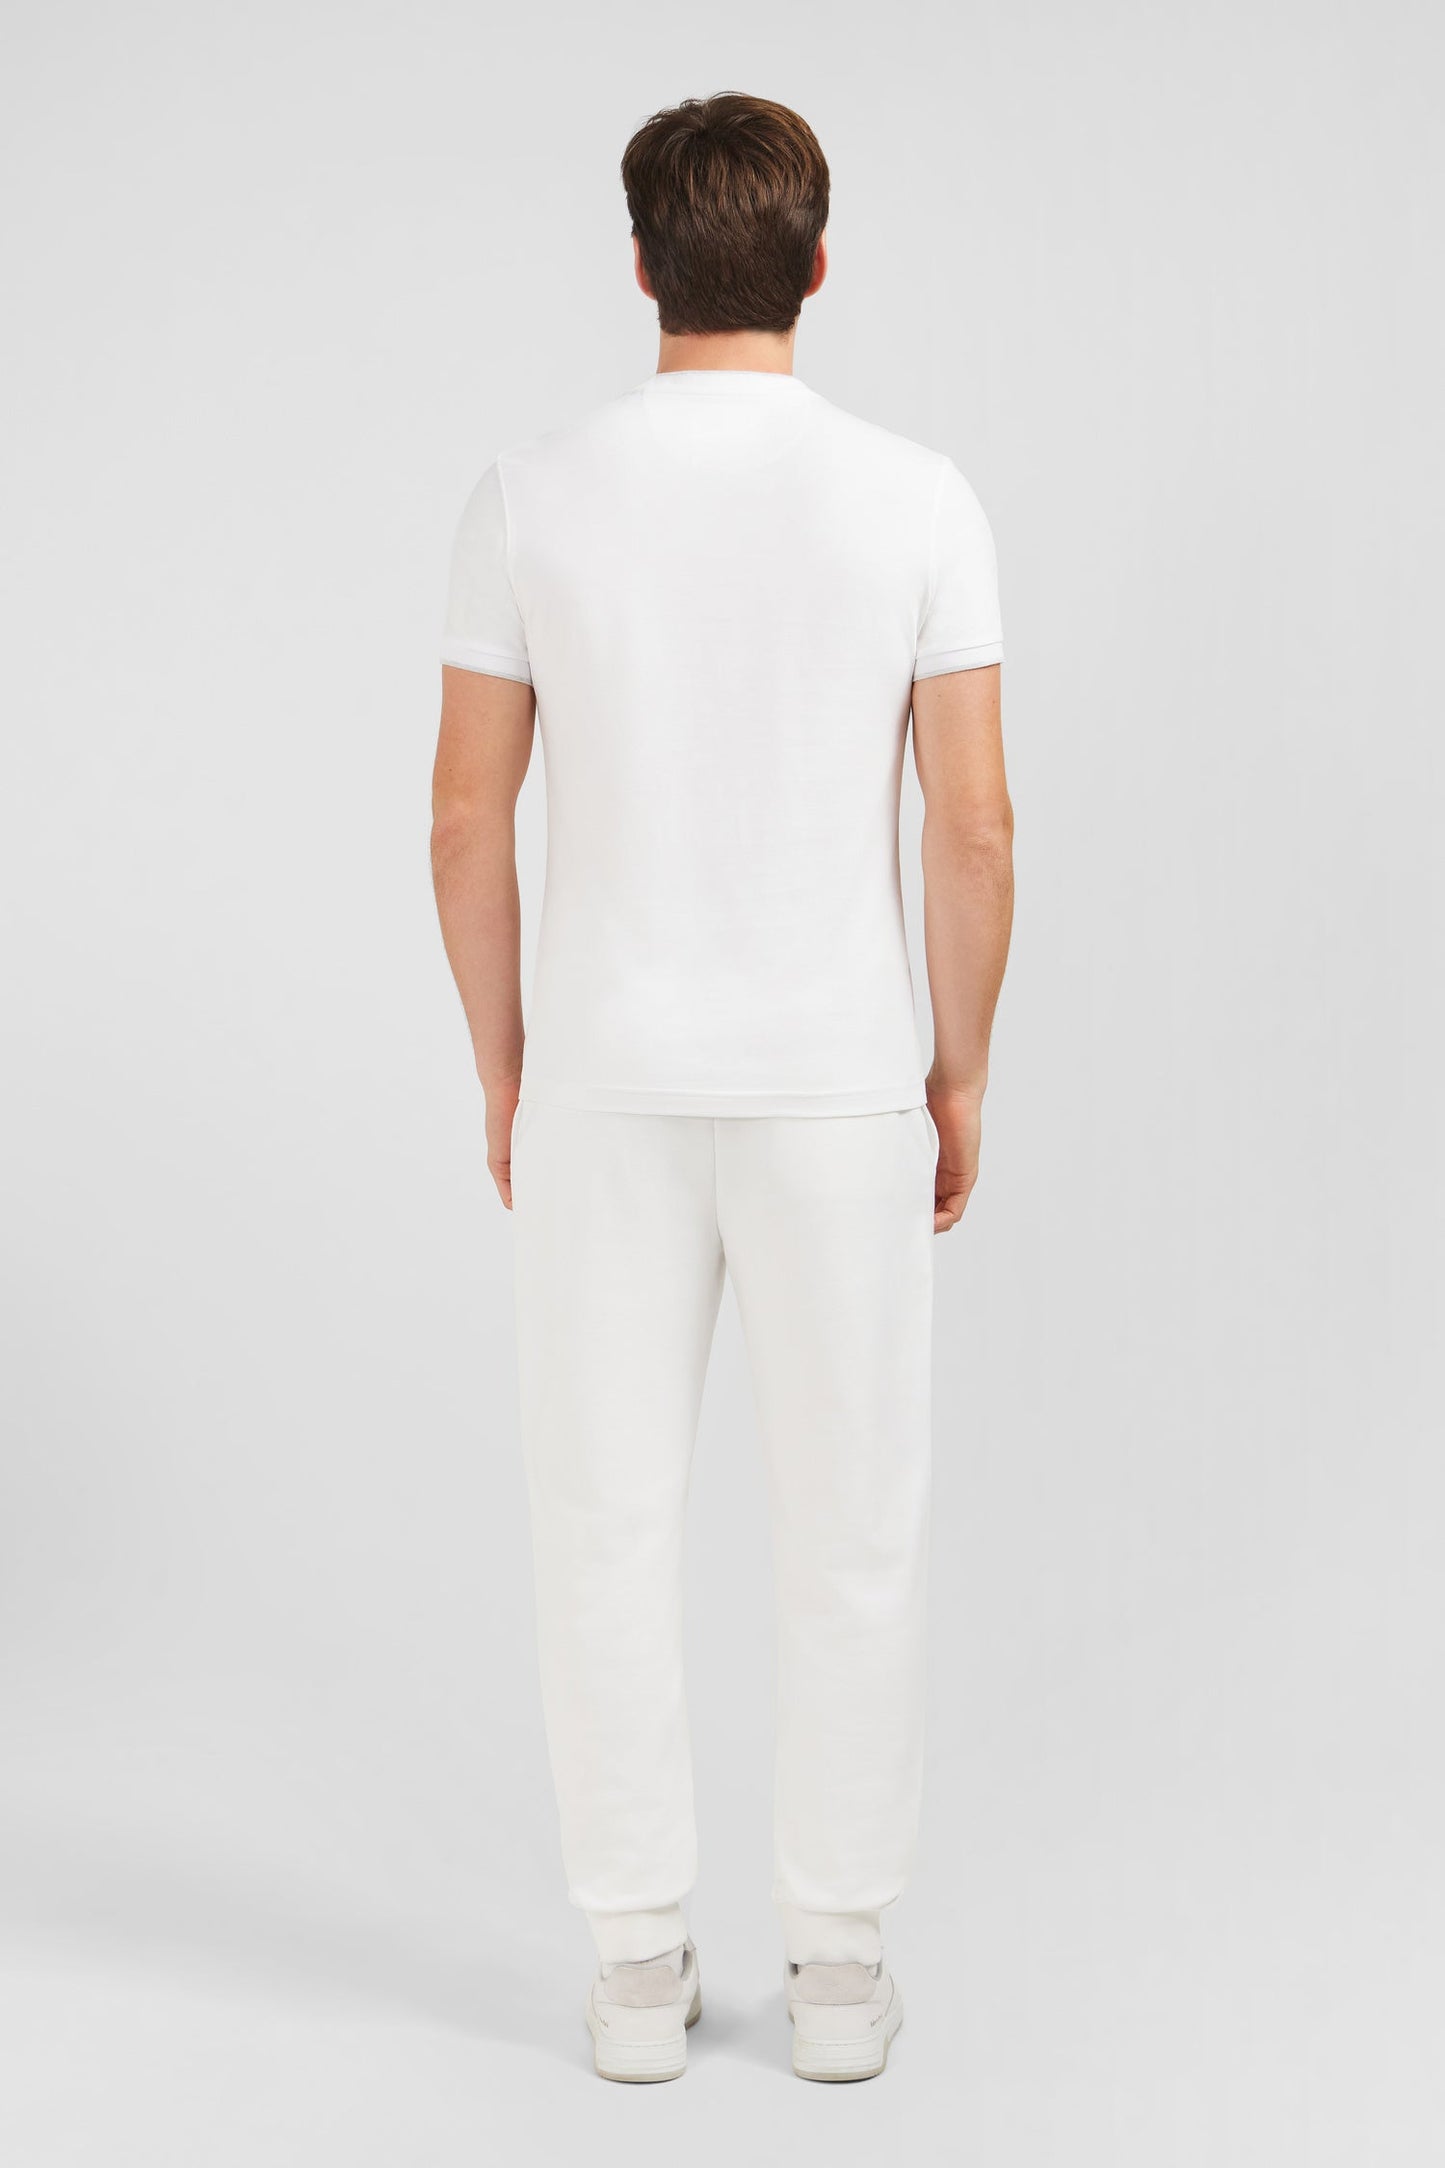 T-shirt blanc uni à manches courtes - Image 4